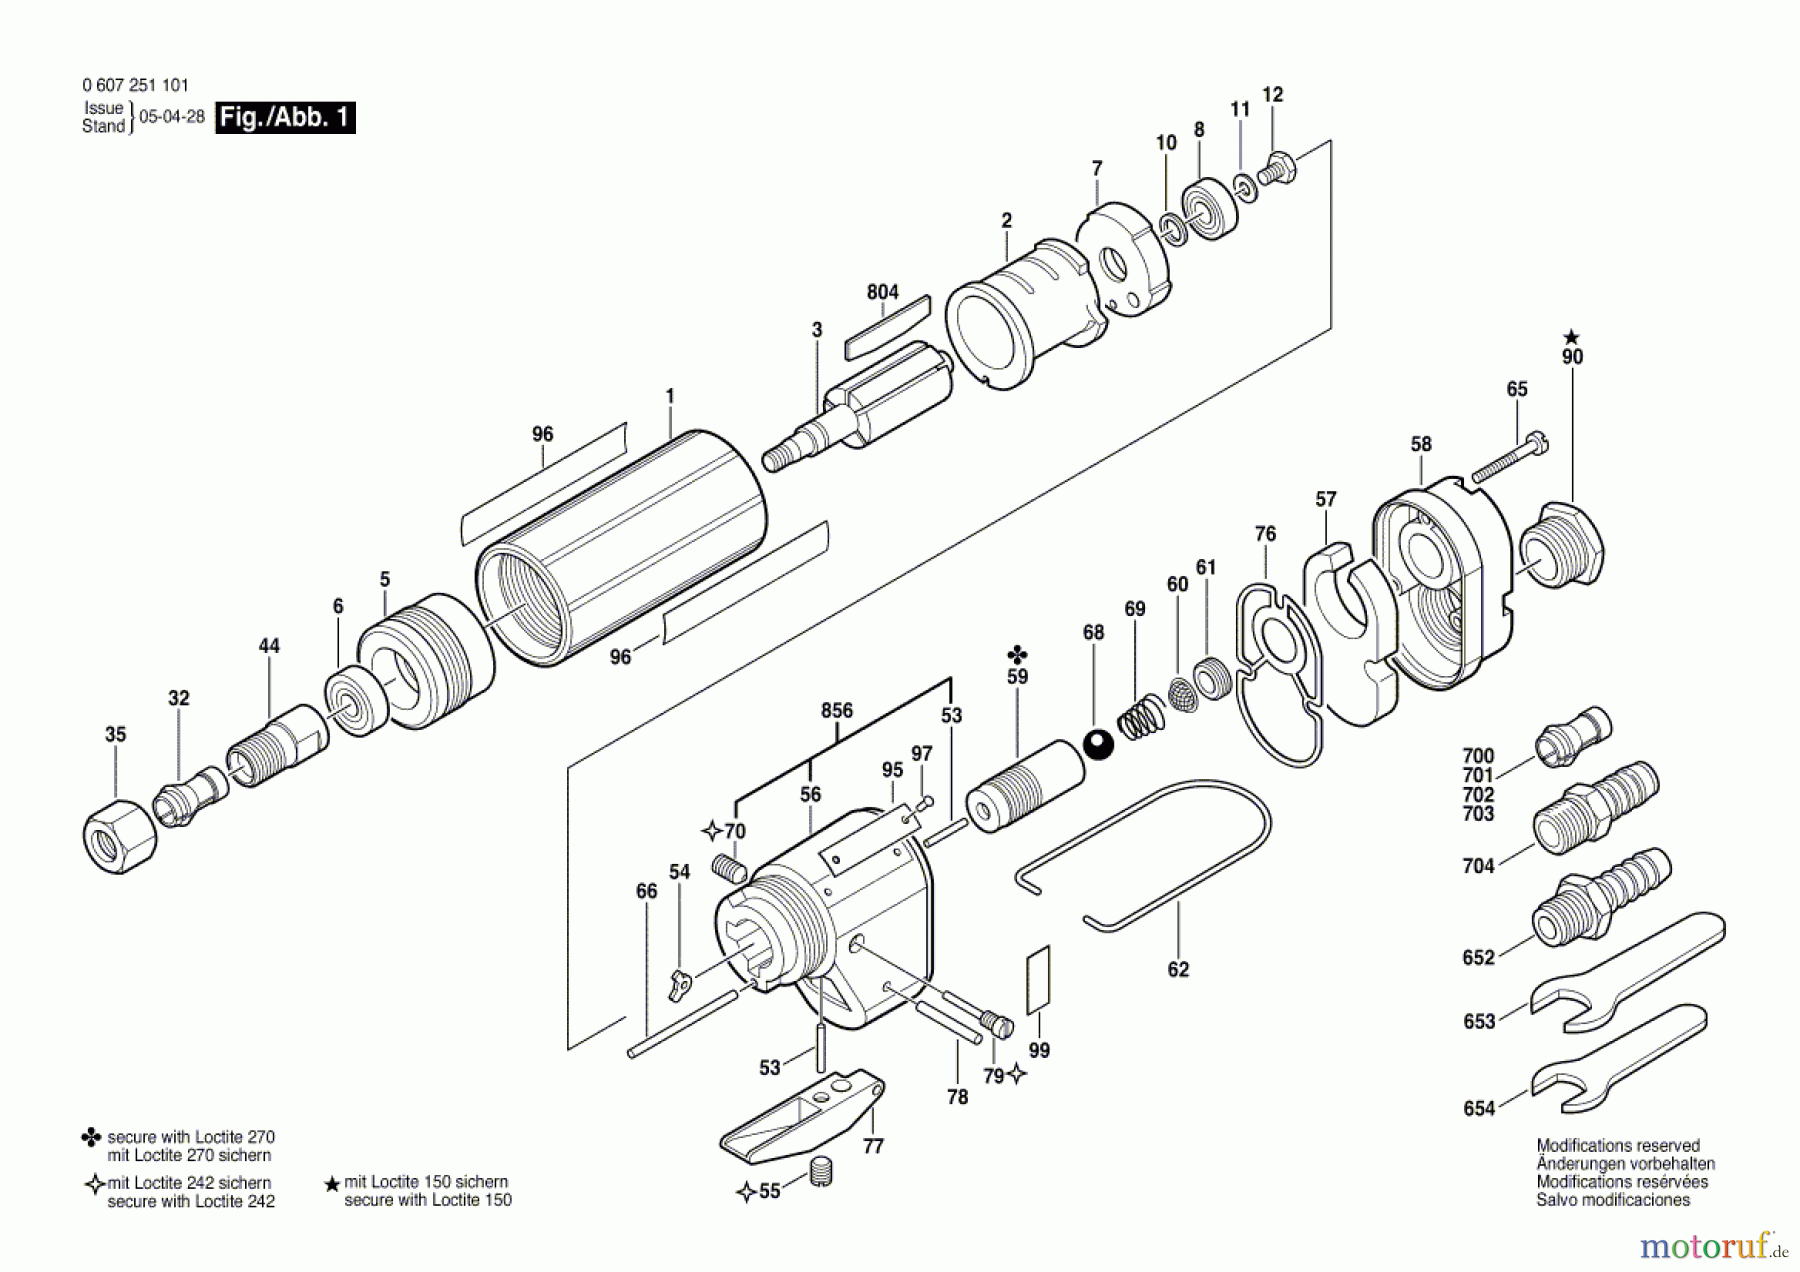  Bosch Werkzeug Hf-Geradschleifer GERADSCHLEIFER 370 WATT-SERIE Seite 1